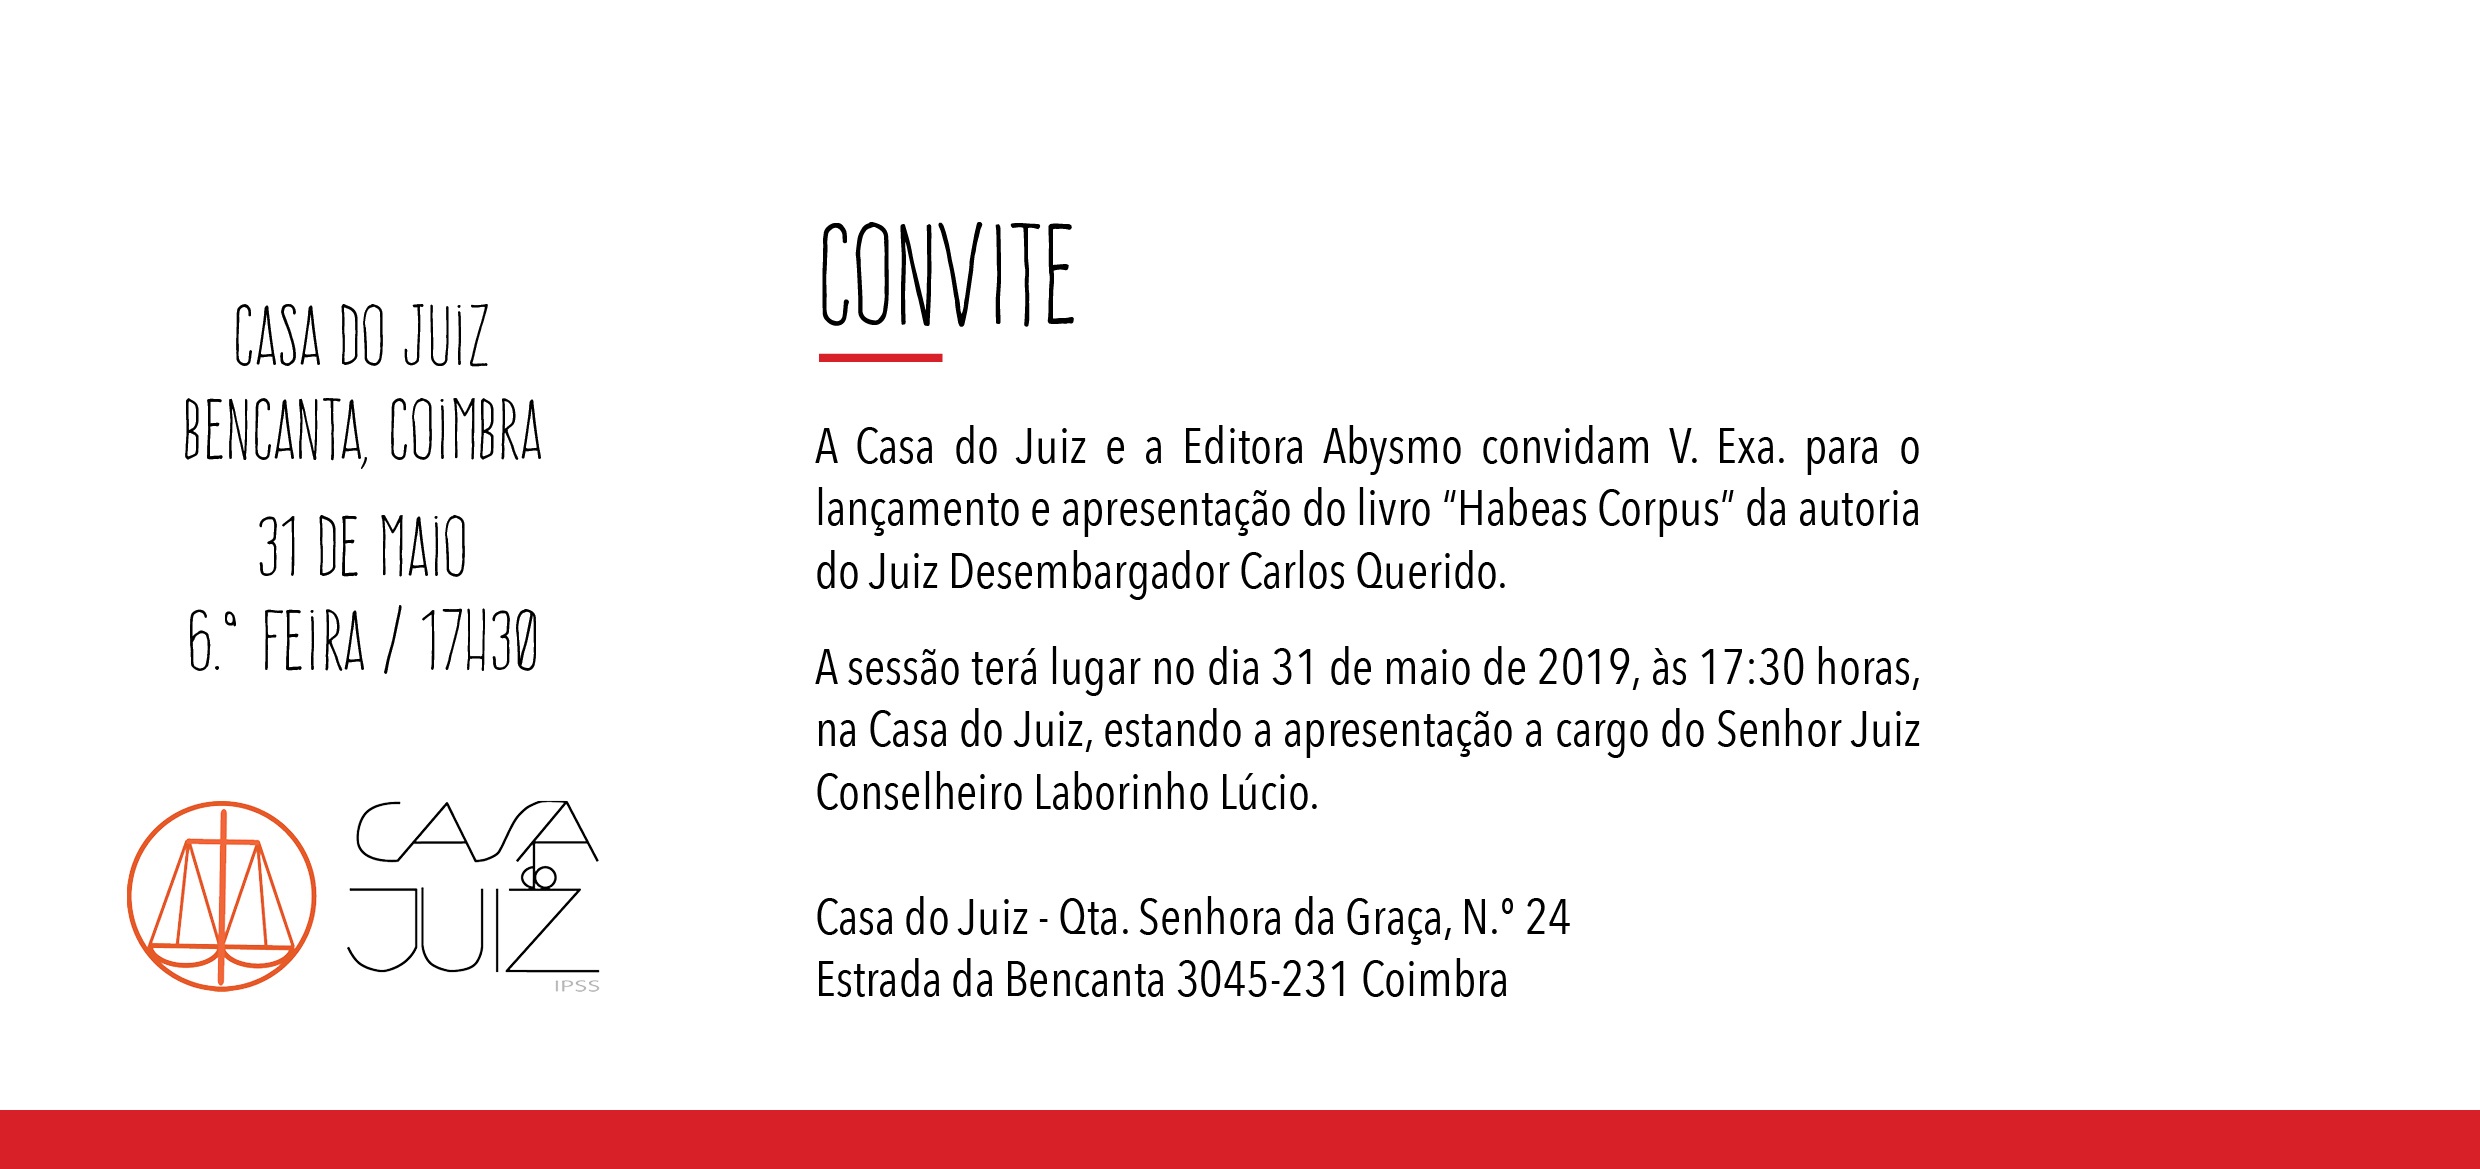 Lançamento e apresentação do livro “Habeas Corpus”, de Carlos Querido – 31/05/2019, 17h30m